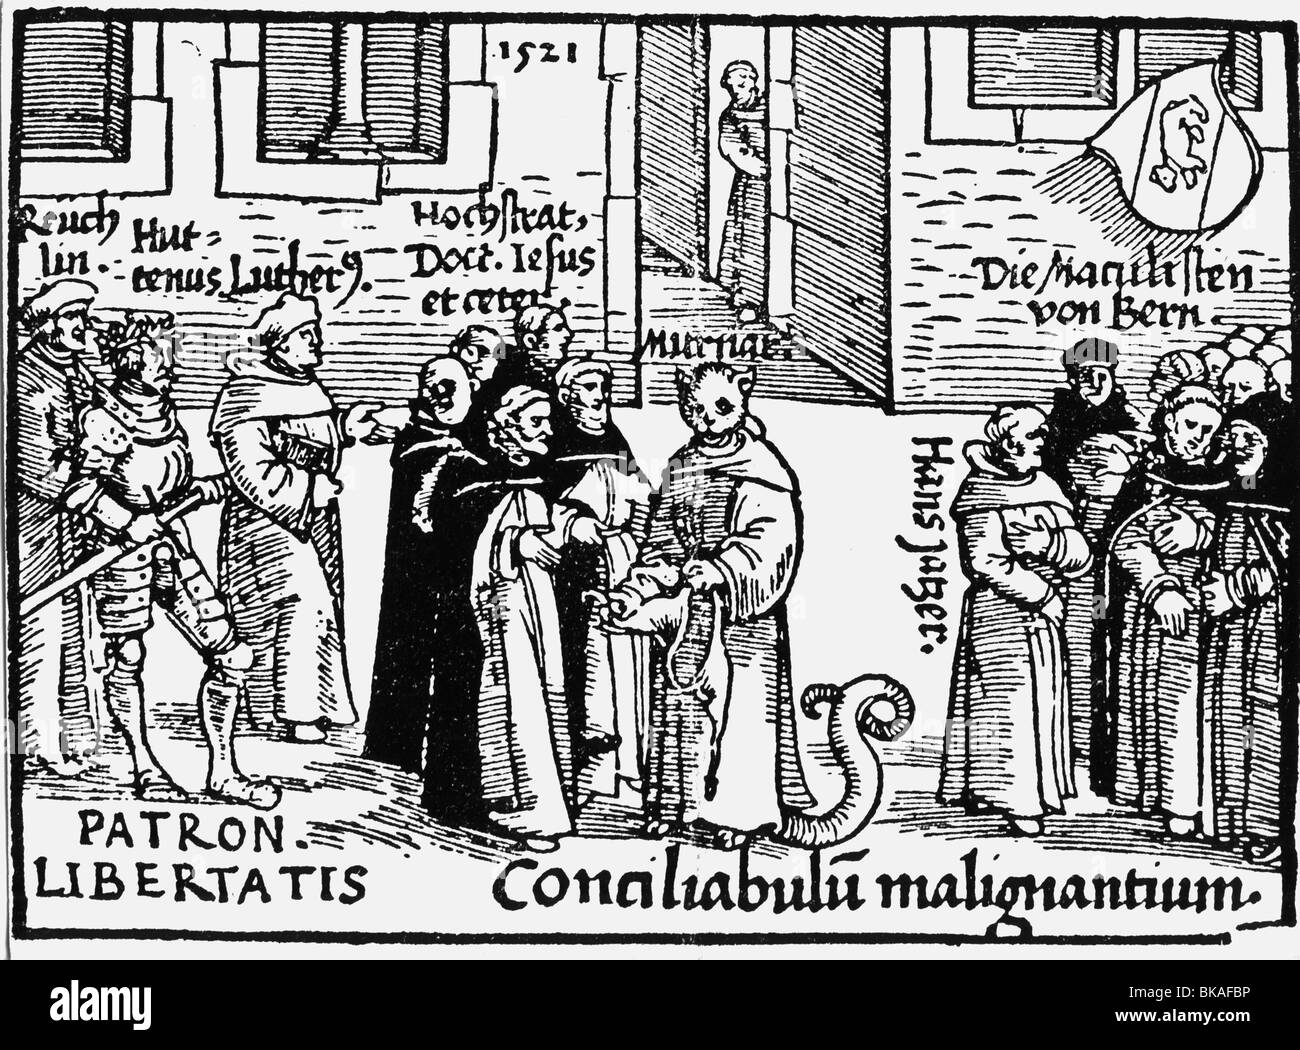 Événements, réforme protestante, 1517 - 1555, propagande, dessin animé, Martin Luther, Ulrich von Hutten et Johann Reuchlin en tant que représentants de la liberté d'un côté, leurs adversaires Thomas Murner, Jakob von Hochstraten et d'autres inquisiteurs de l'autre, woodcut, 1521, inquisiteur, caricature, clergymen, moines, protestantisme, démon, démon, démon, Démon, Démon, Démon, Démon, Diéon, Démon, Démon Édit de vers, hérétique, hérétiques, essais, anathème, Hoogstraaten, XVIe siècle, historique, historique, peuple, Banque D'Images